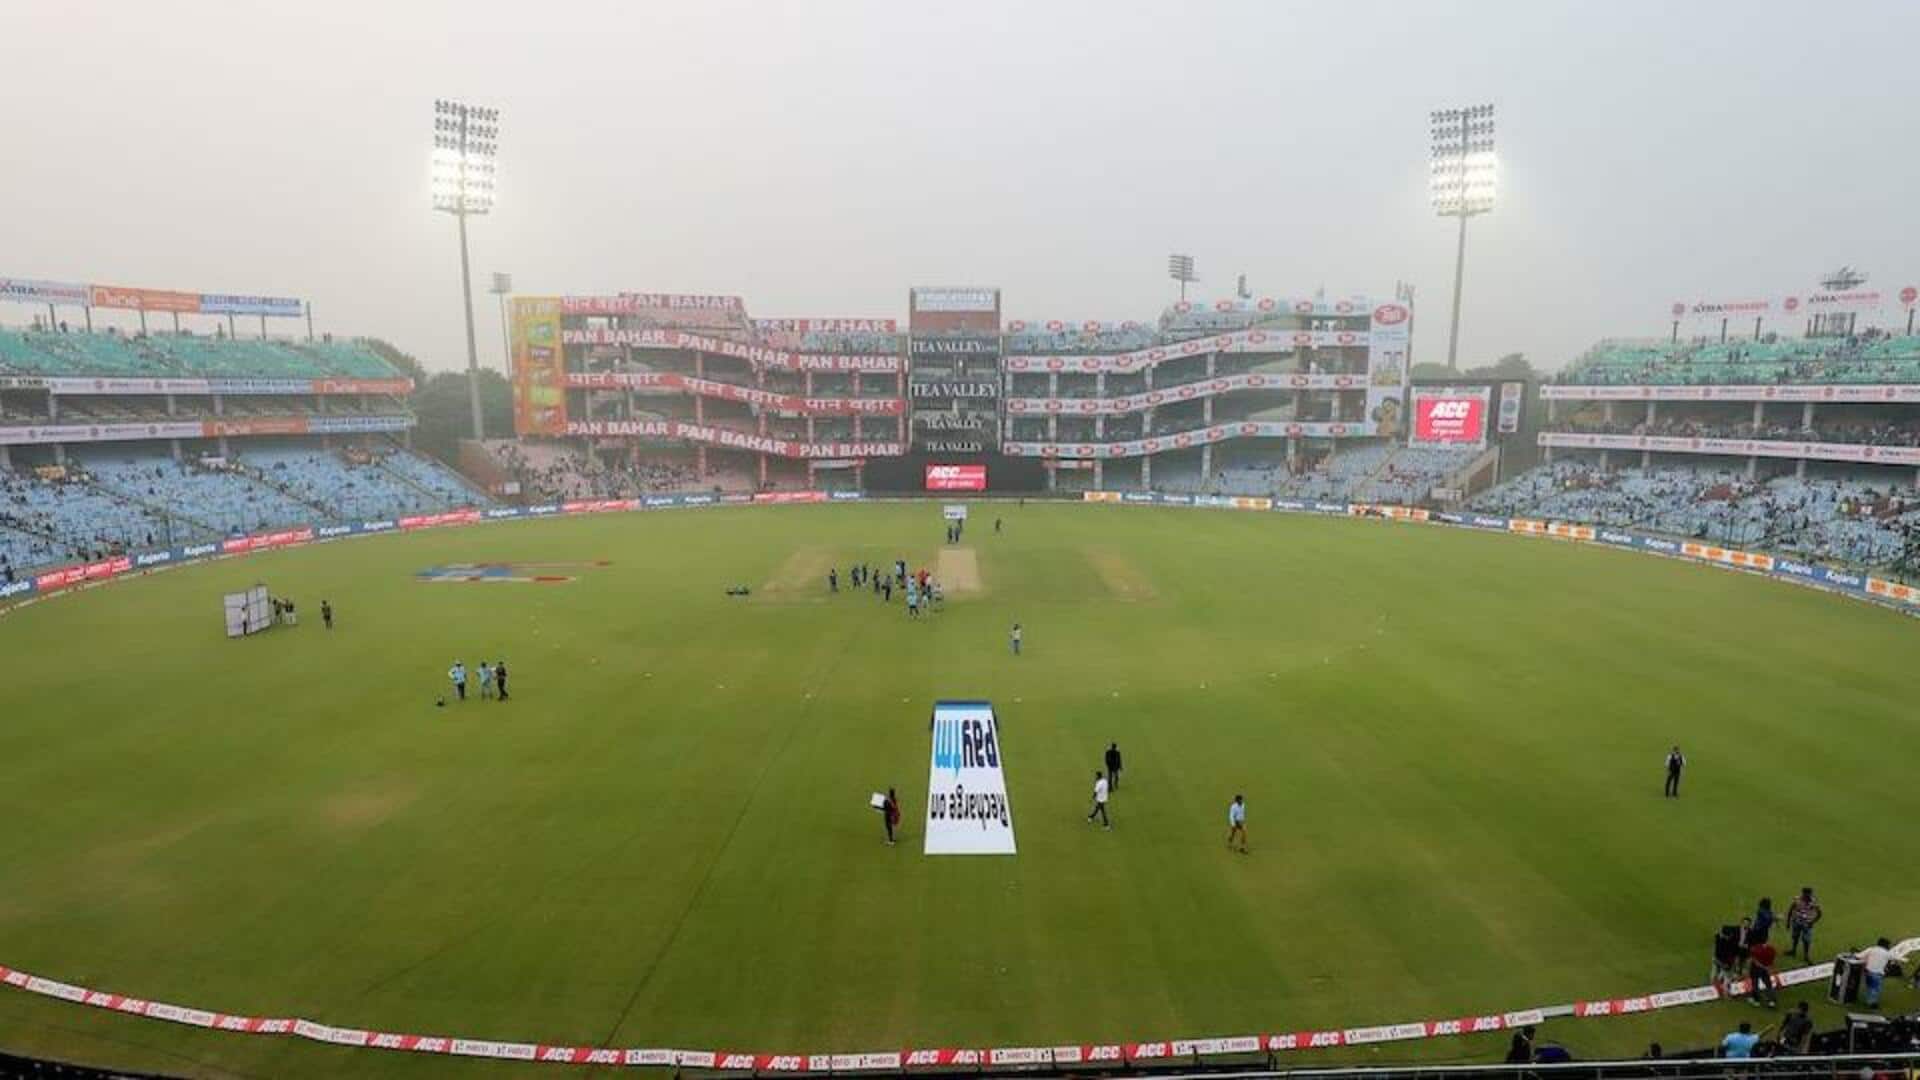 भारत बनाम ऑस्ट्रेलिया: अरुण जेटली स्टेडियम में खेला जाएगा दूसरा टेस्ट, जानिए मैदान के सभी आंकड़े 